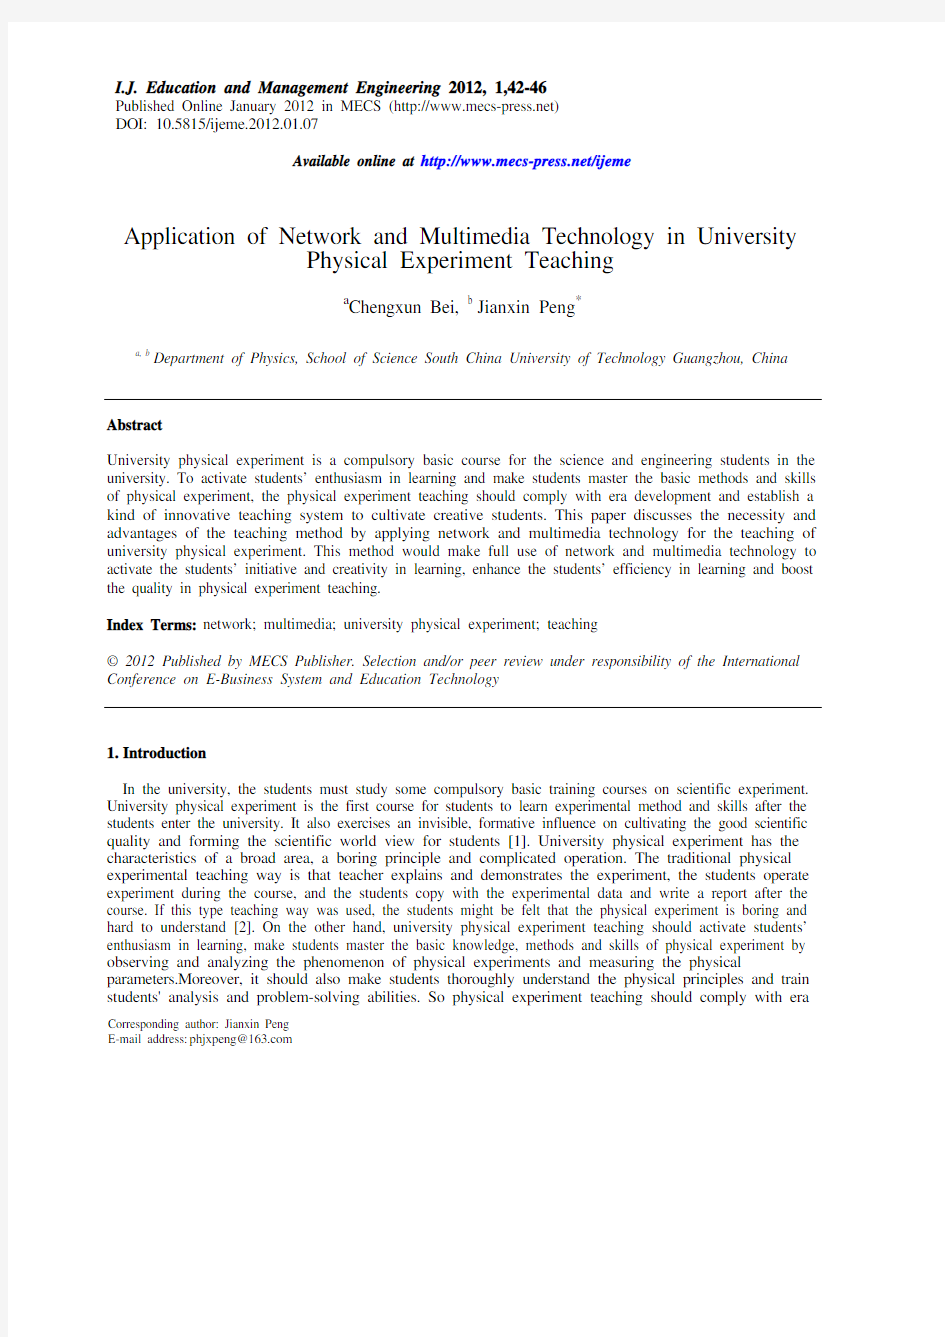 网络和多媒体技术在大学物理实验教学中的应用(IJEME-V2-N1-7)